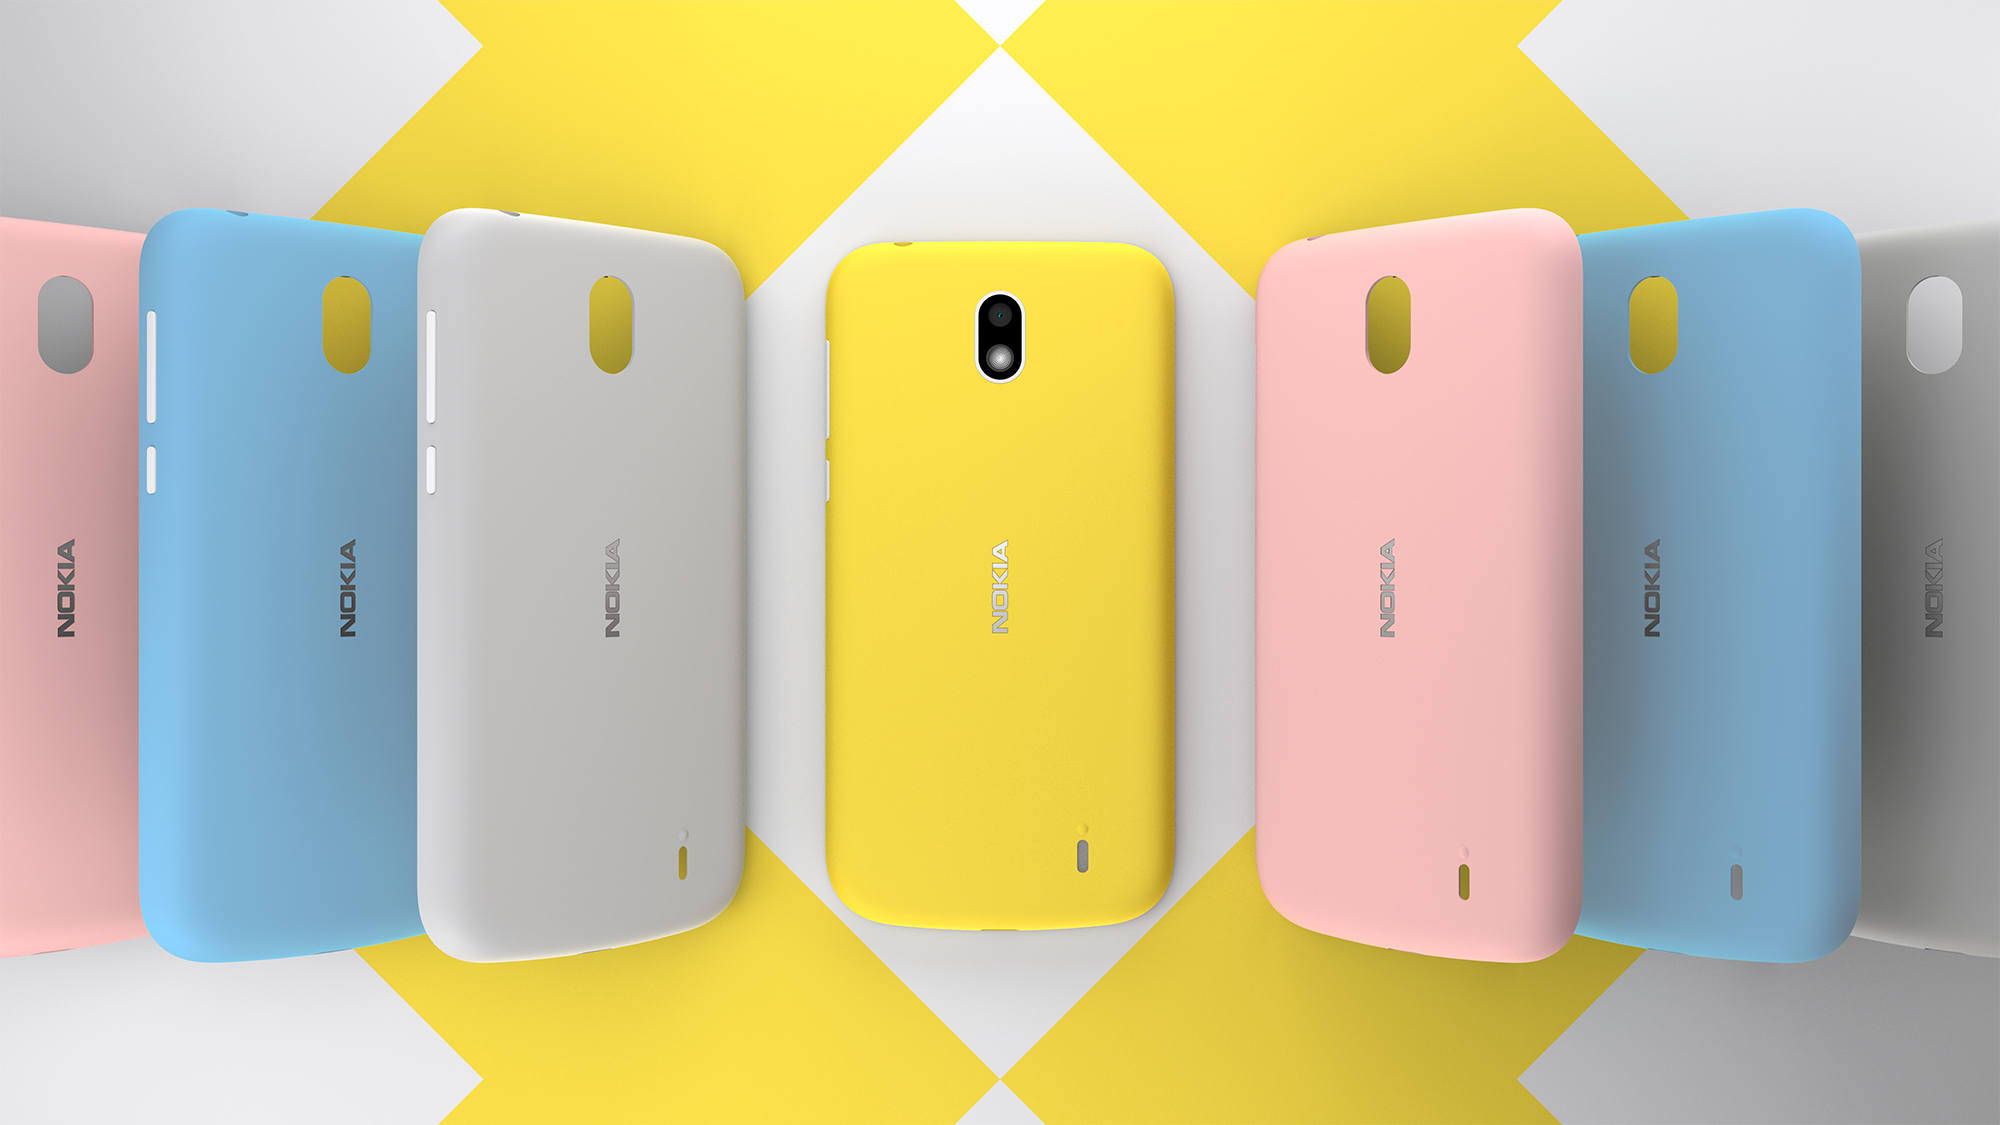 Nokia giới thiệu chiếc smartphone giá rẻ, có thể thay được nắp lưng nhiều màu sắc